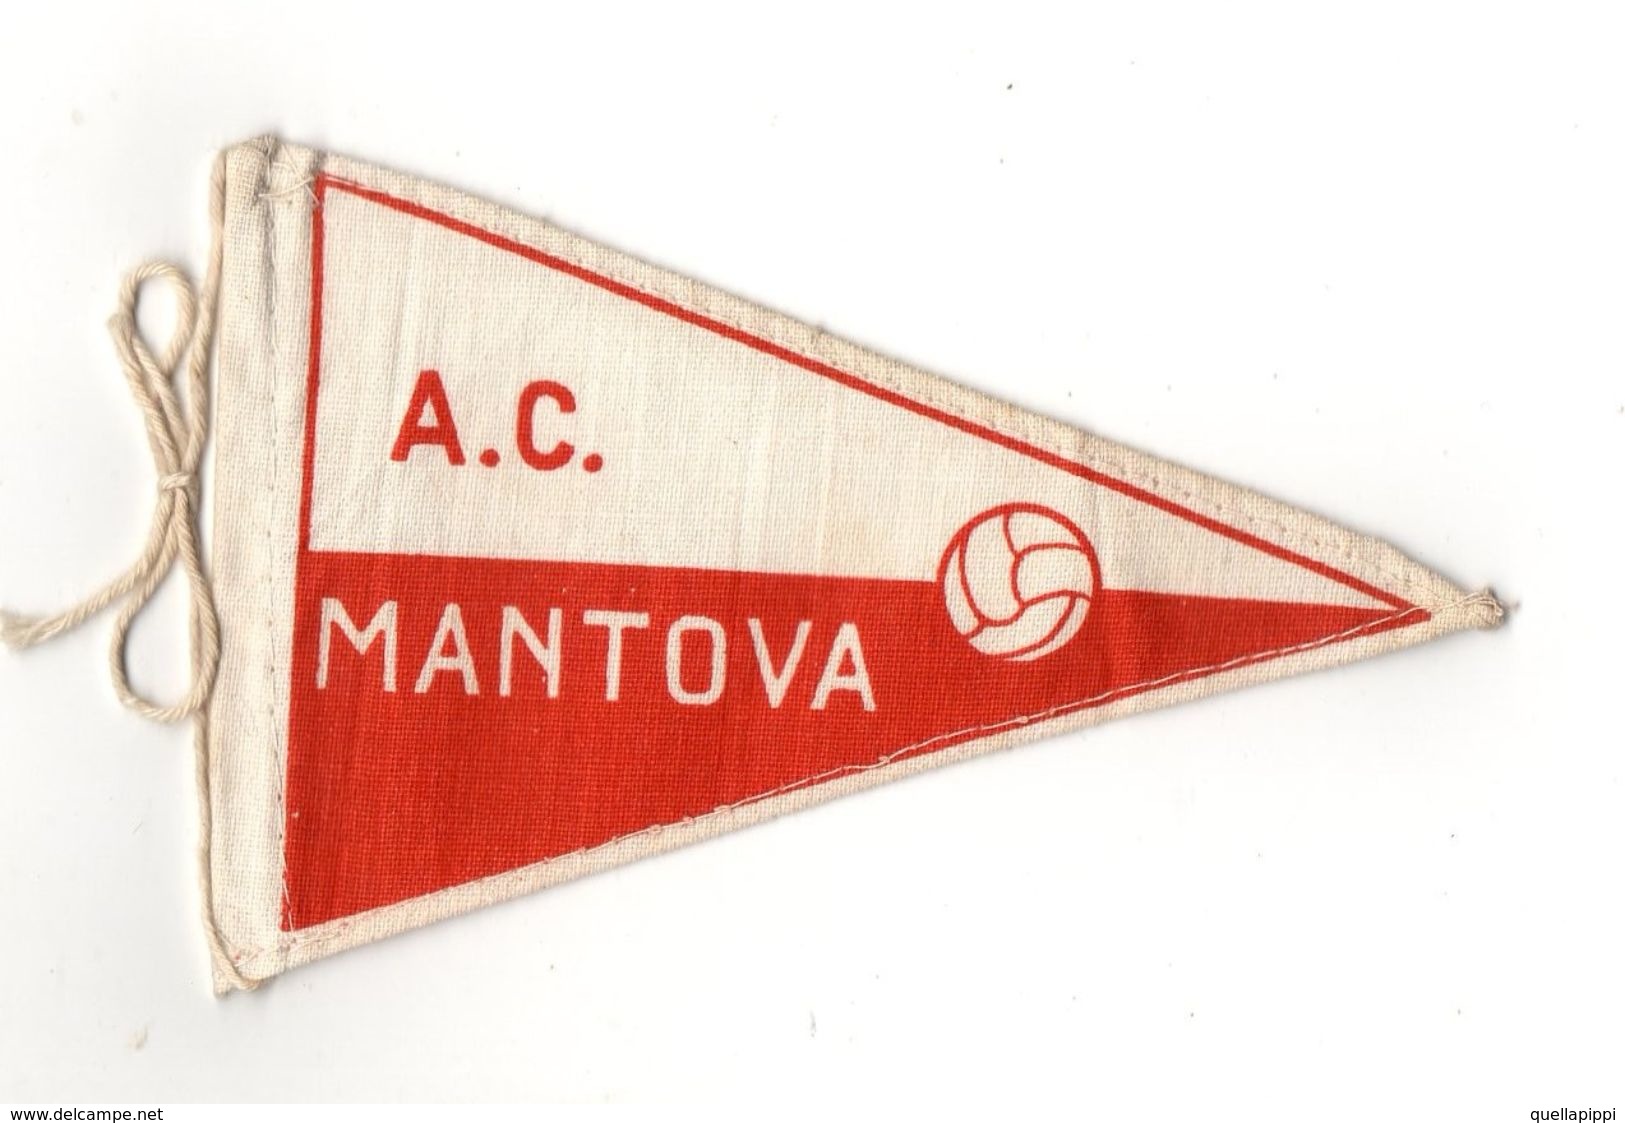 07129 "MANTOVA A.C. FOOTBALL CLUB - BANDIERINA BIFRONTE IN STOFFA CON LEGACCI" ANNI '70 ORIG. - Apparel, Souvenirs & Other